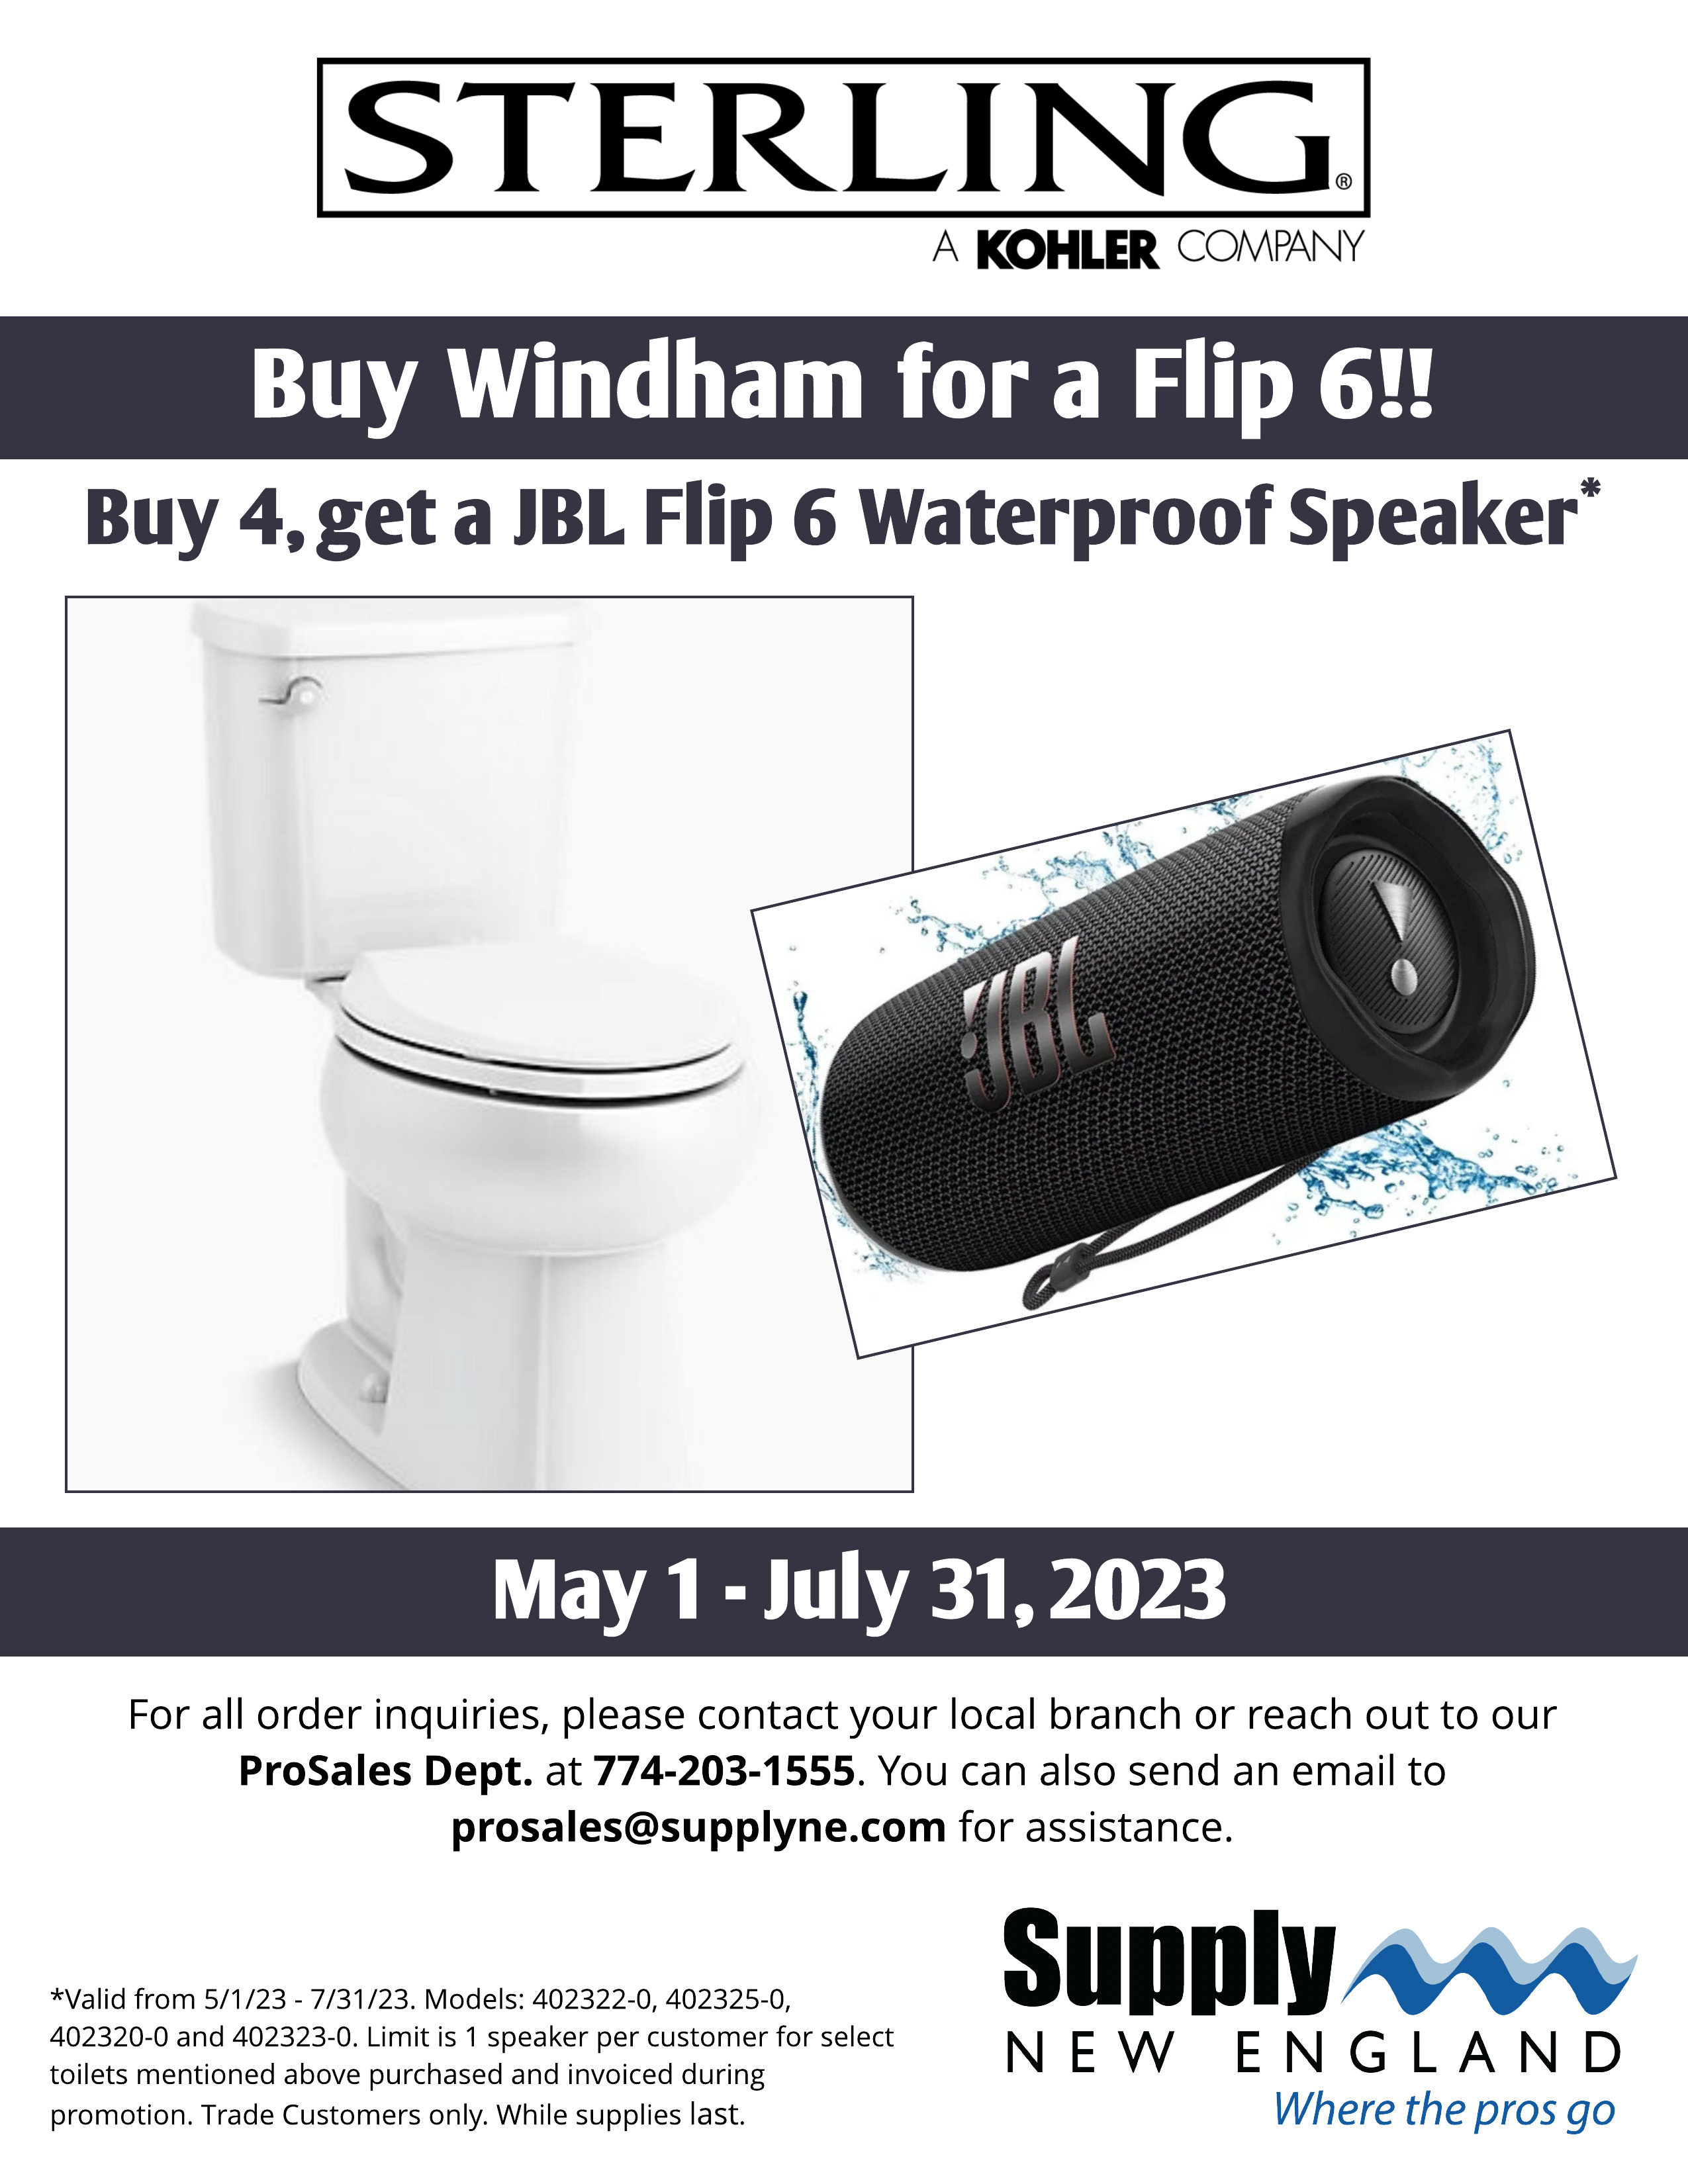 Sterling Windham Toilet Flip 6 Promotion Image